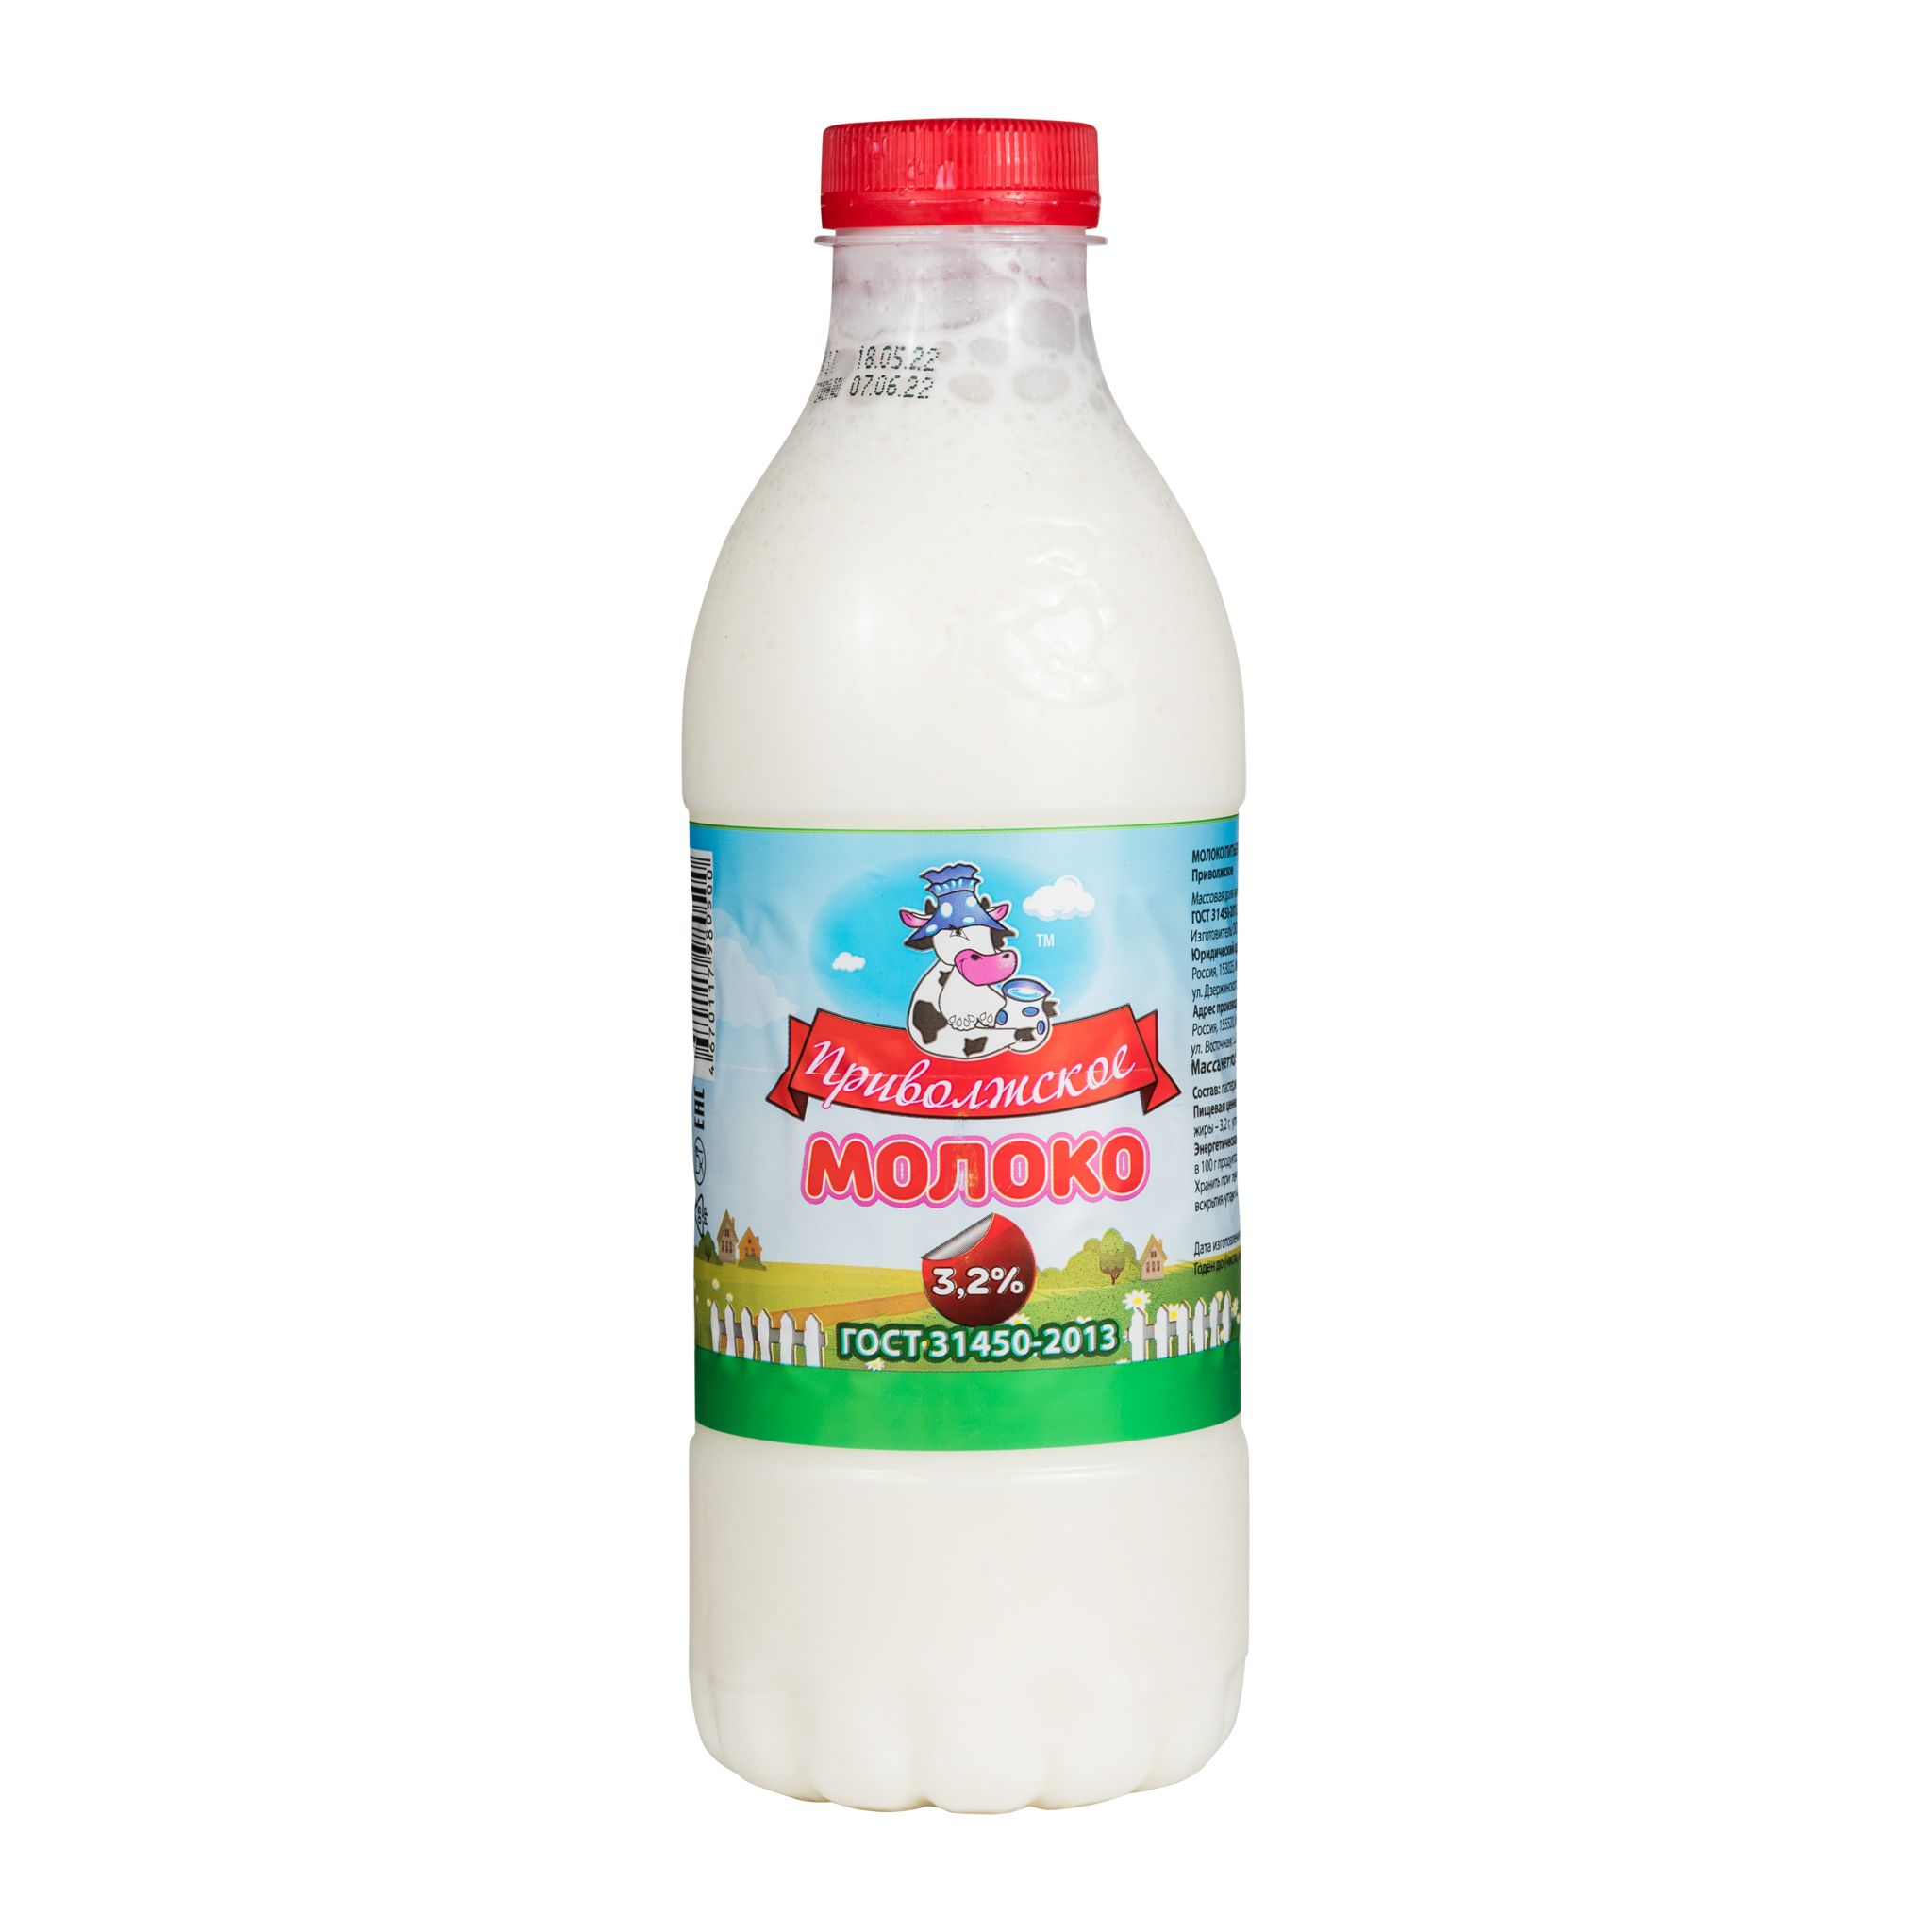 Молоко 3,2% ТМ «Приволжское» ПЭТ 900 мл. бутылка пастеризованное ГОСТ